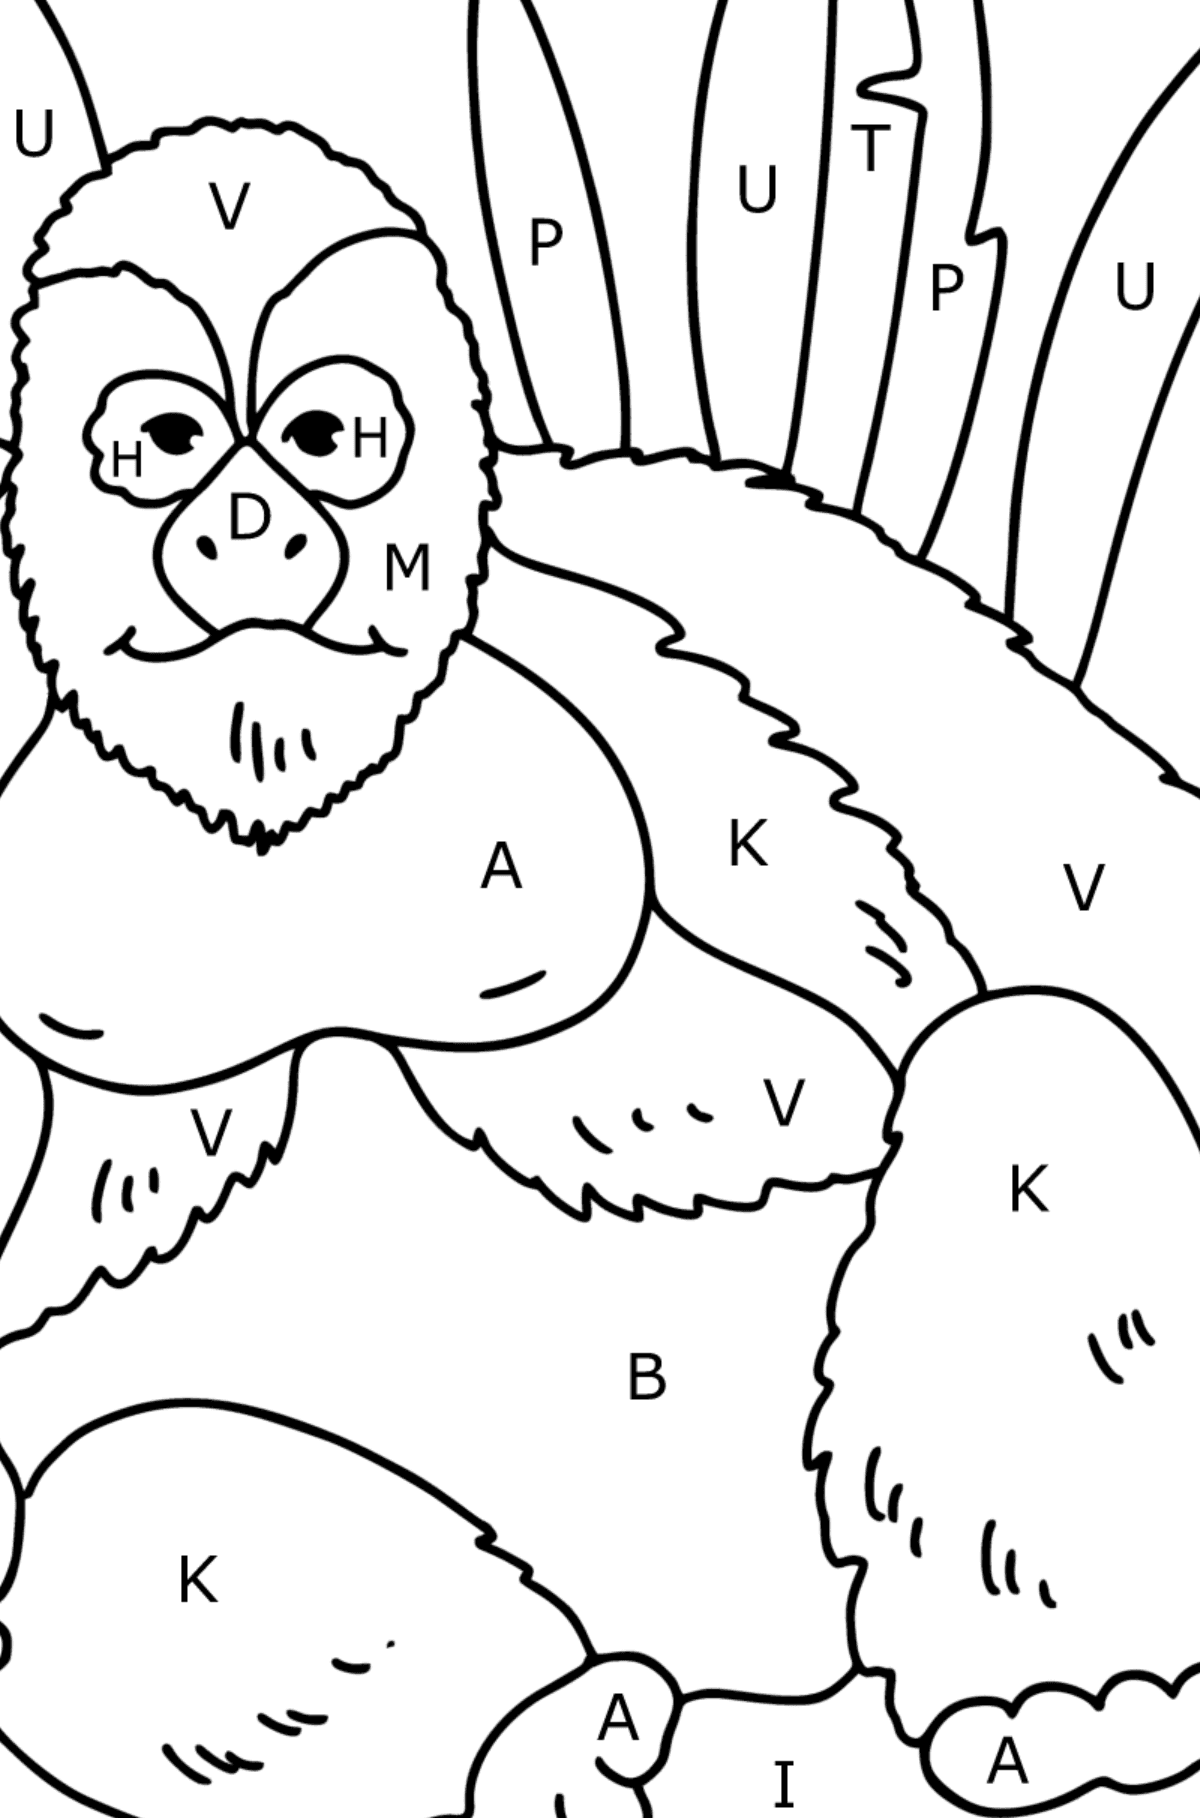 Gorilla kleurplaat - Kleuren met letters voor kinderen